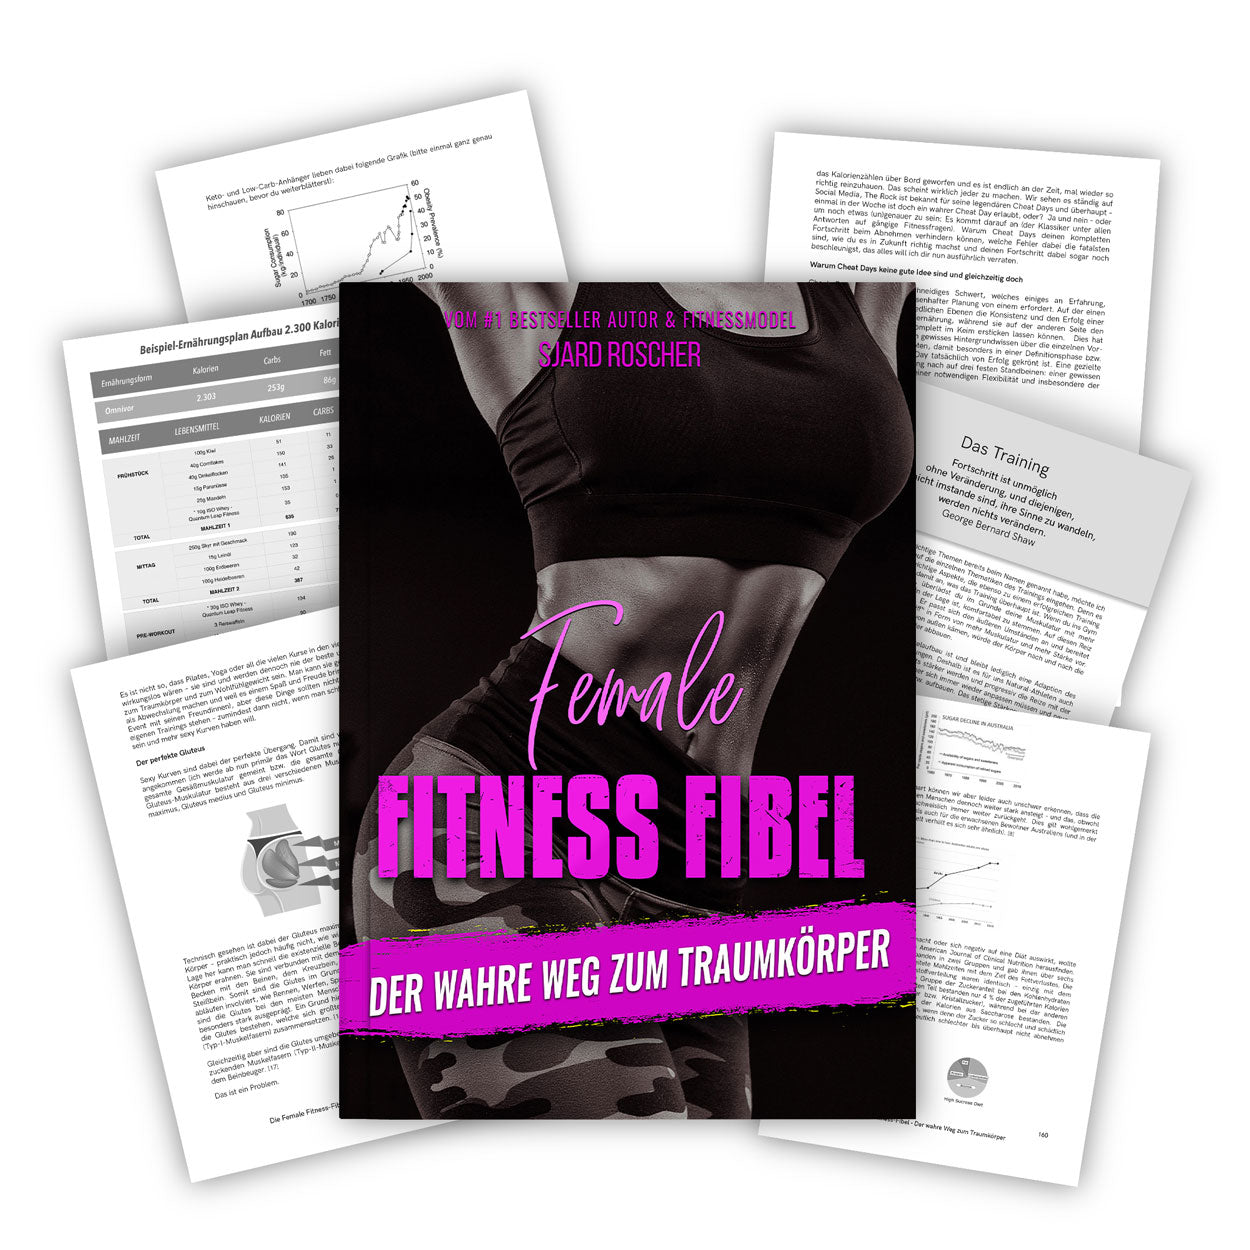 Female Fitness Fibel Sjard Roscher